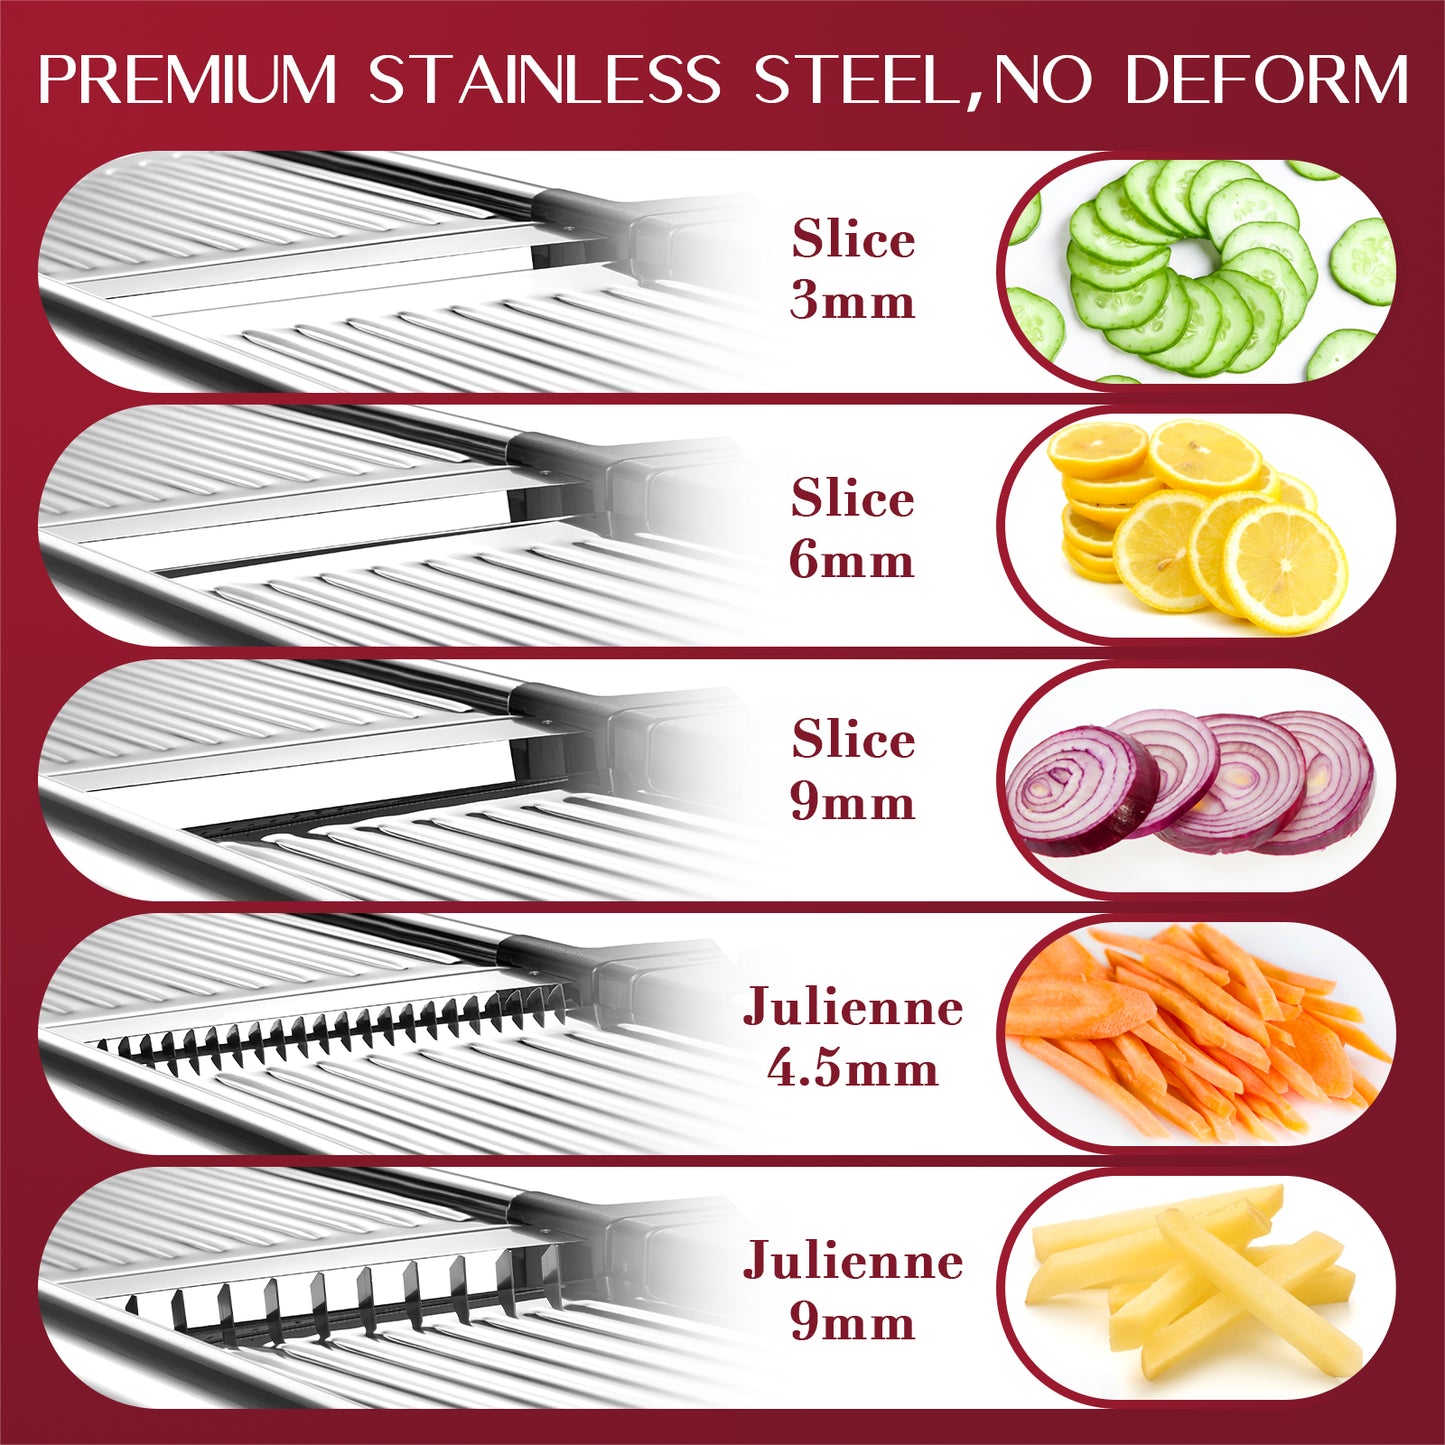 MIDONE Mandoline Slicer - Adjustable Mandoline Slicer for Kitchen, Stainless Steel Mandoline Food Slicer, Mandolin, Potato Slicer, Tomato Slicer with Cut-Resistant Gloves & Cleaning Brush